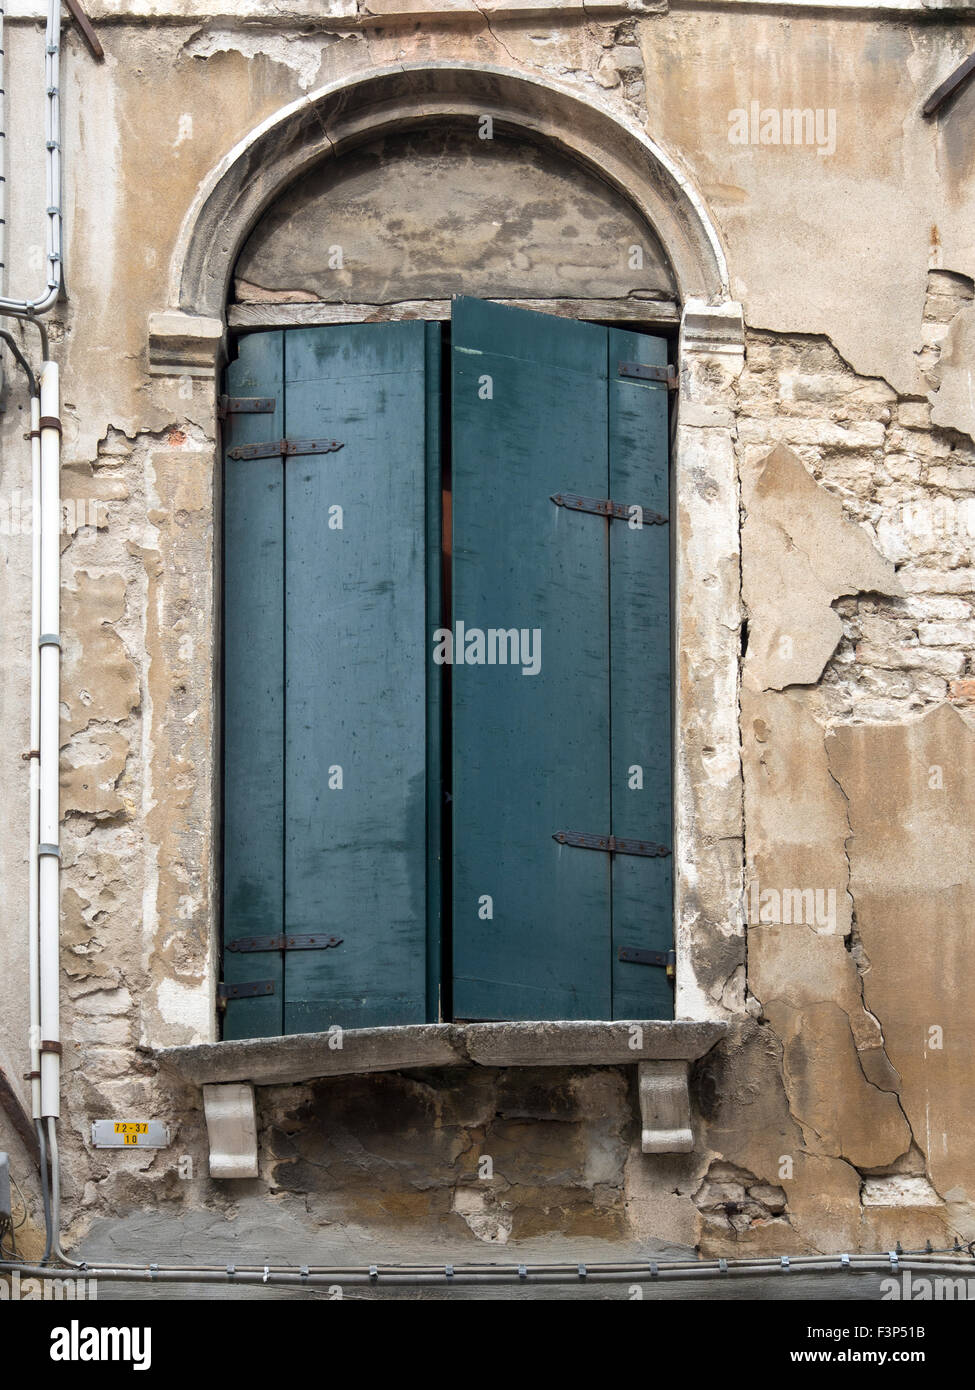 VENEDIG, ITALIEN - 05. MAI 2015: Alte hölzerne Fensterläden an einem Fenster in einem Steingebäude Stockfoto